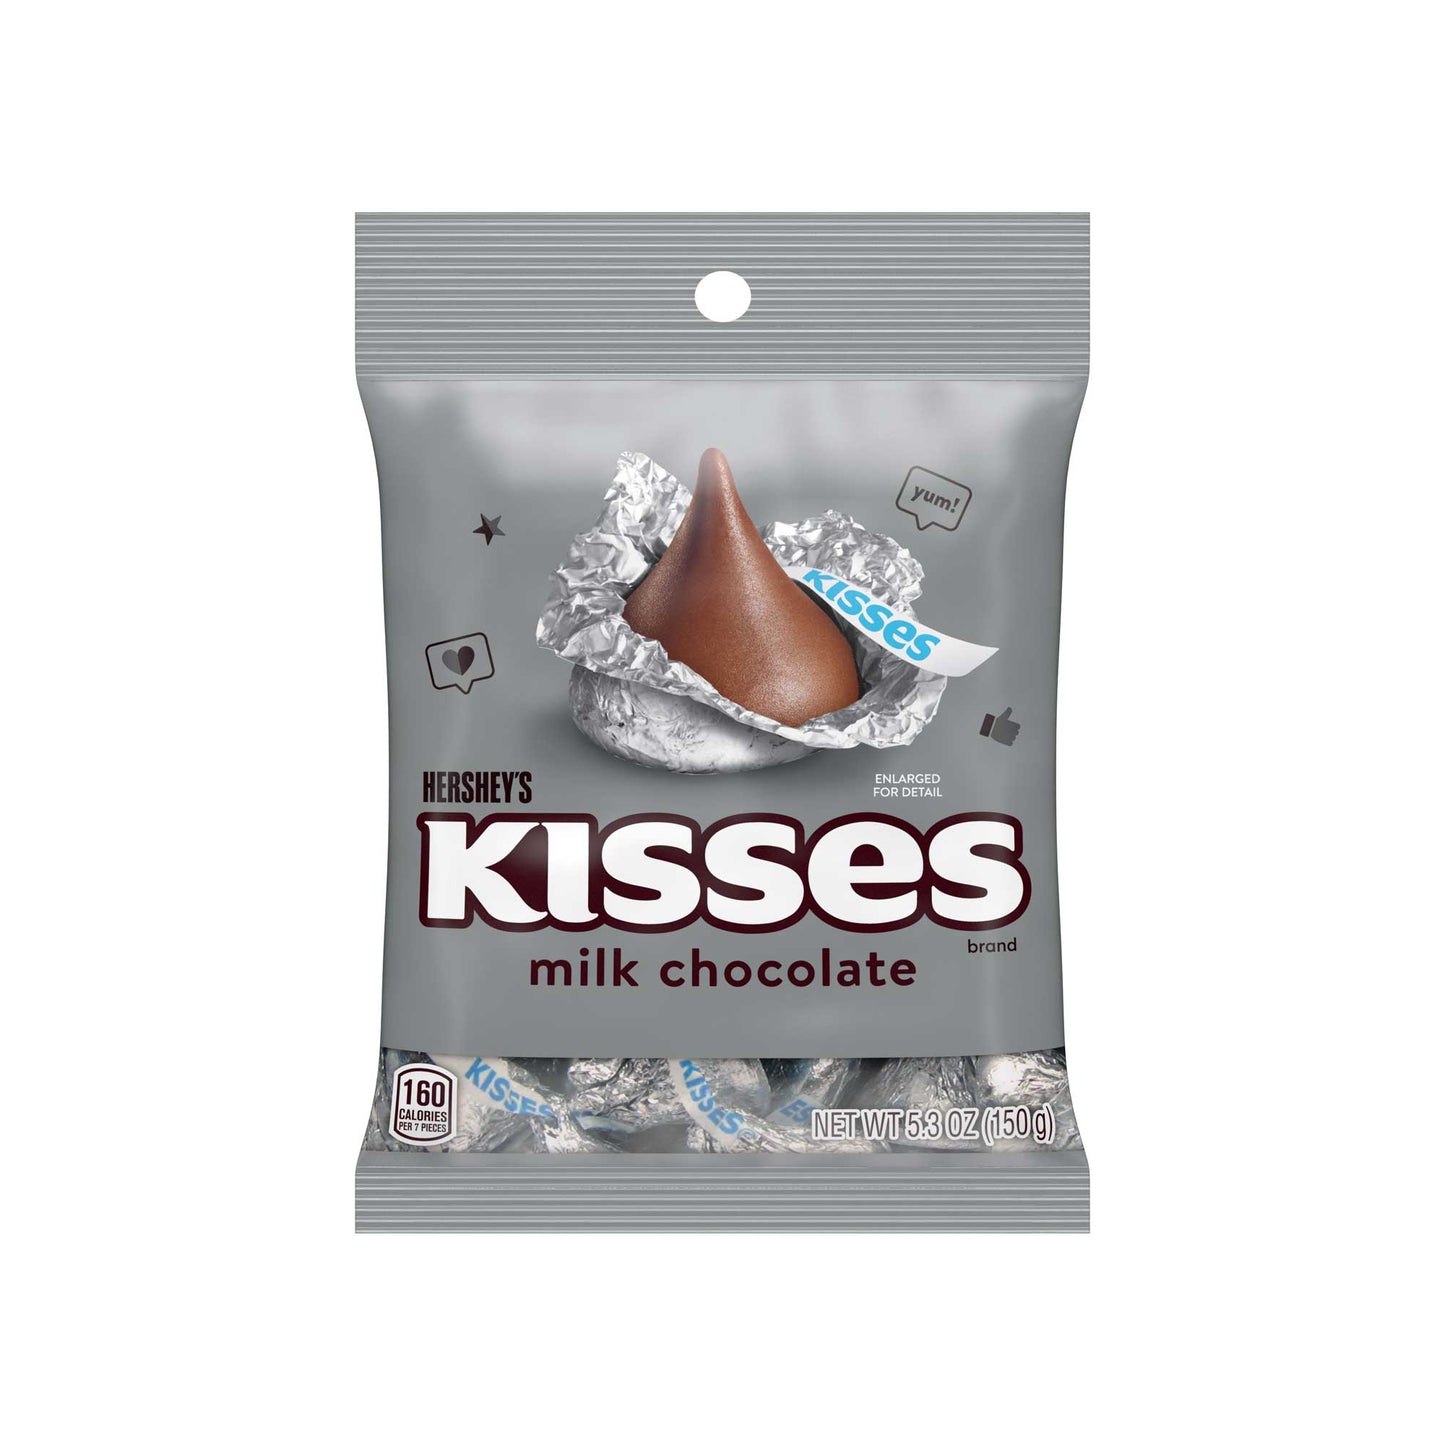 HERSHEY'S KISSES MILK CHOCOLATE